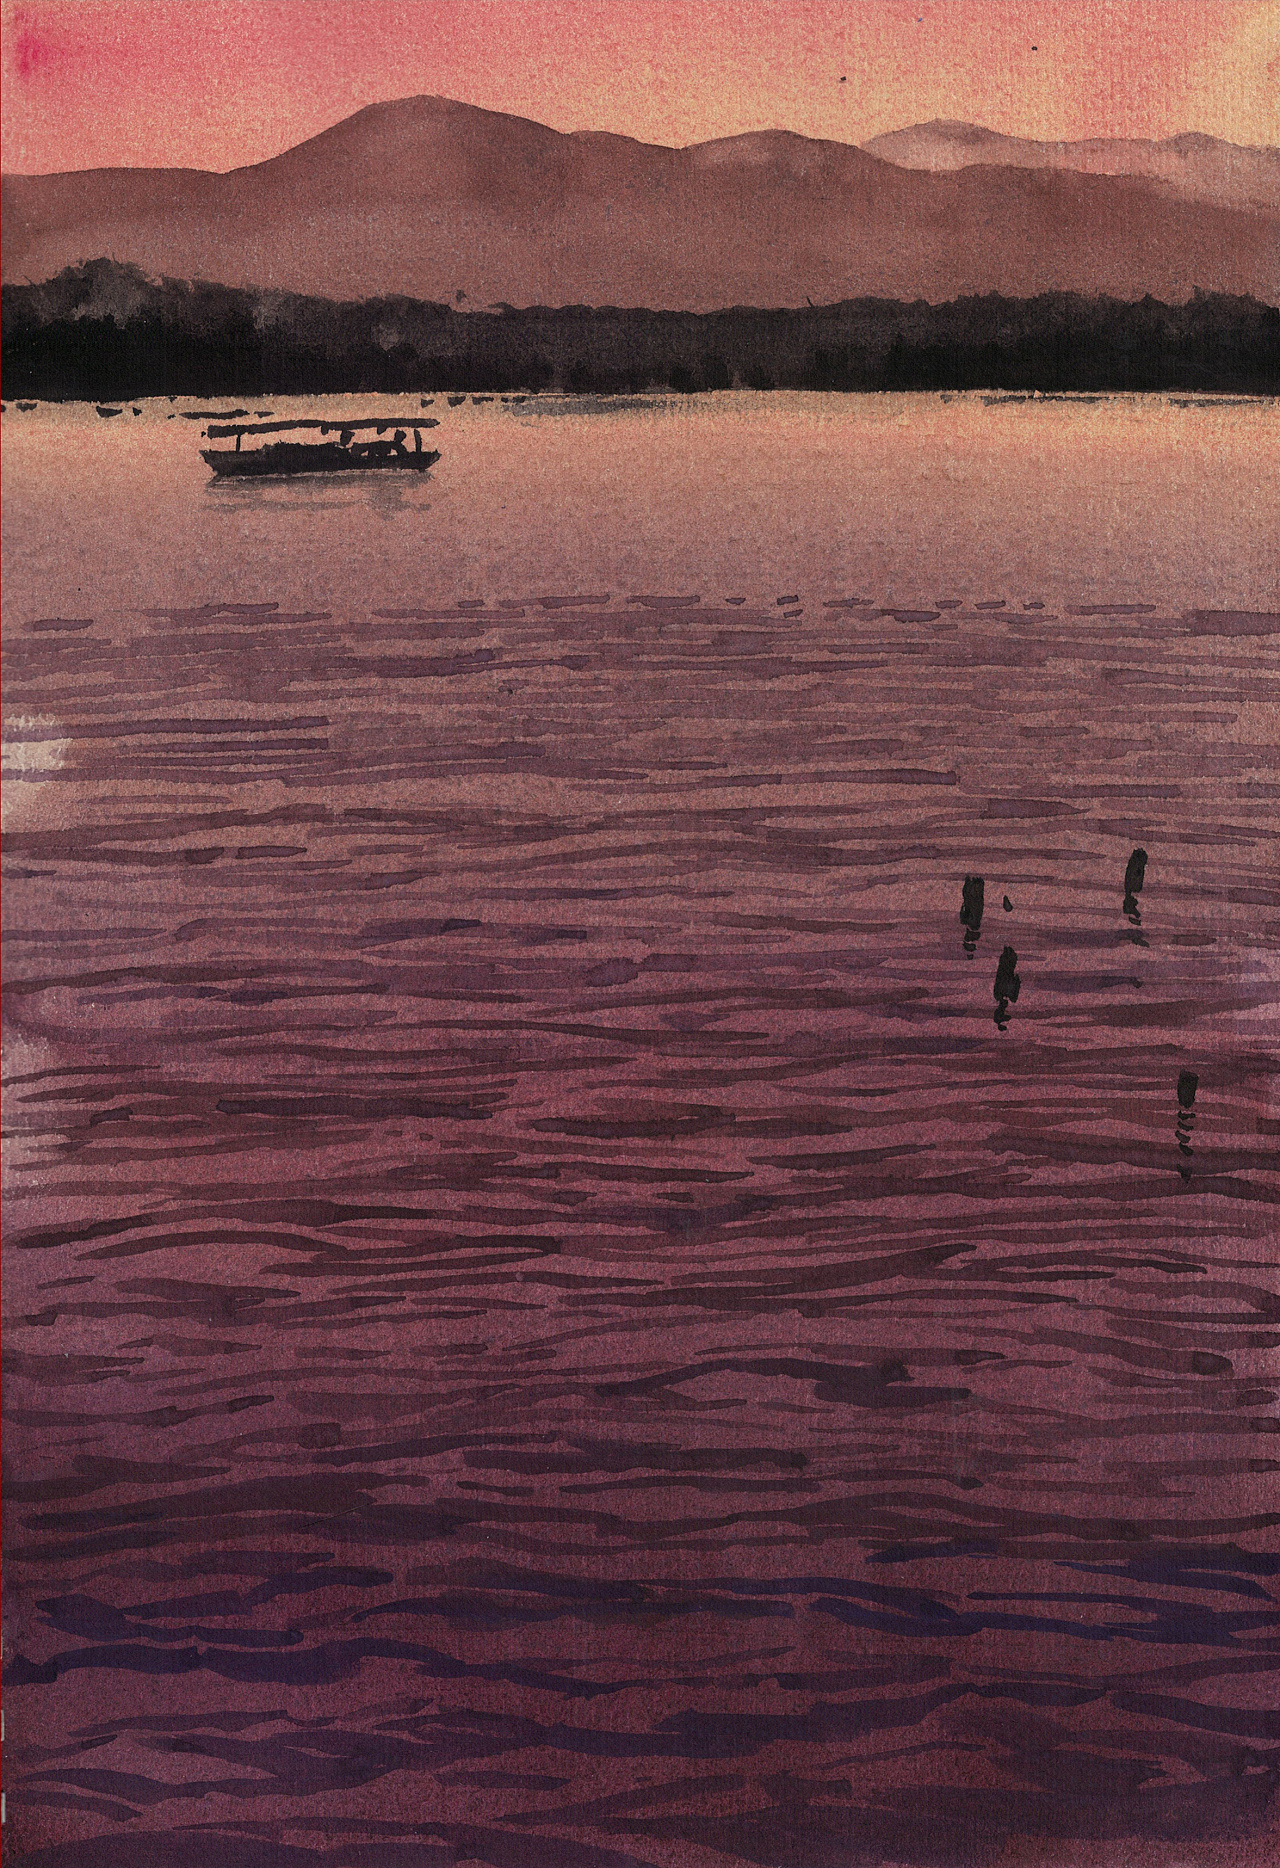 西湖水彩画画法图片